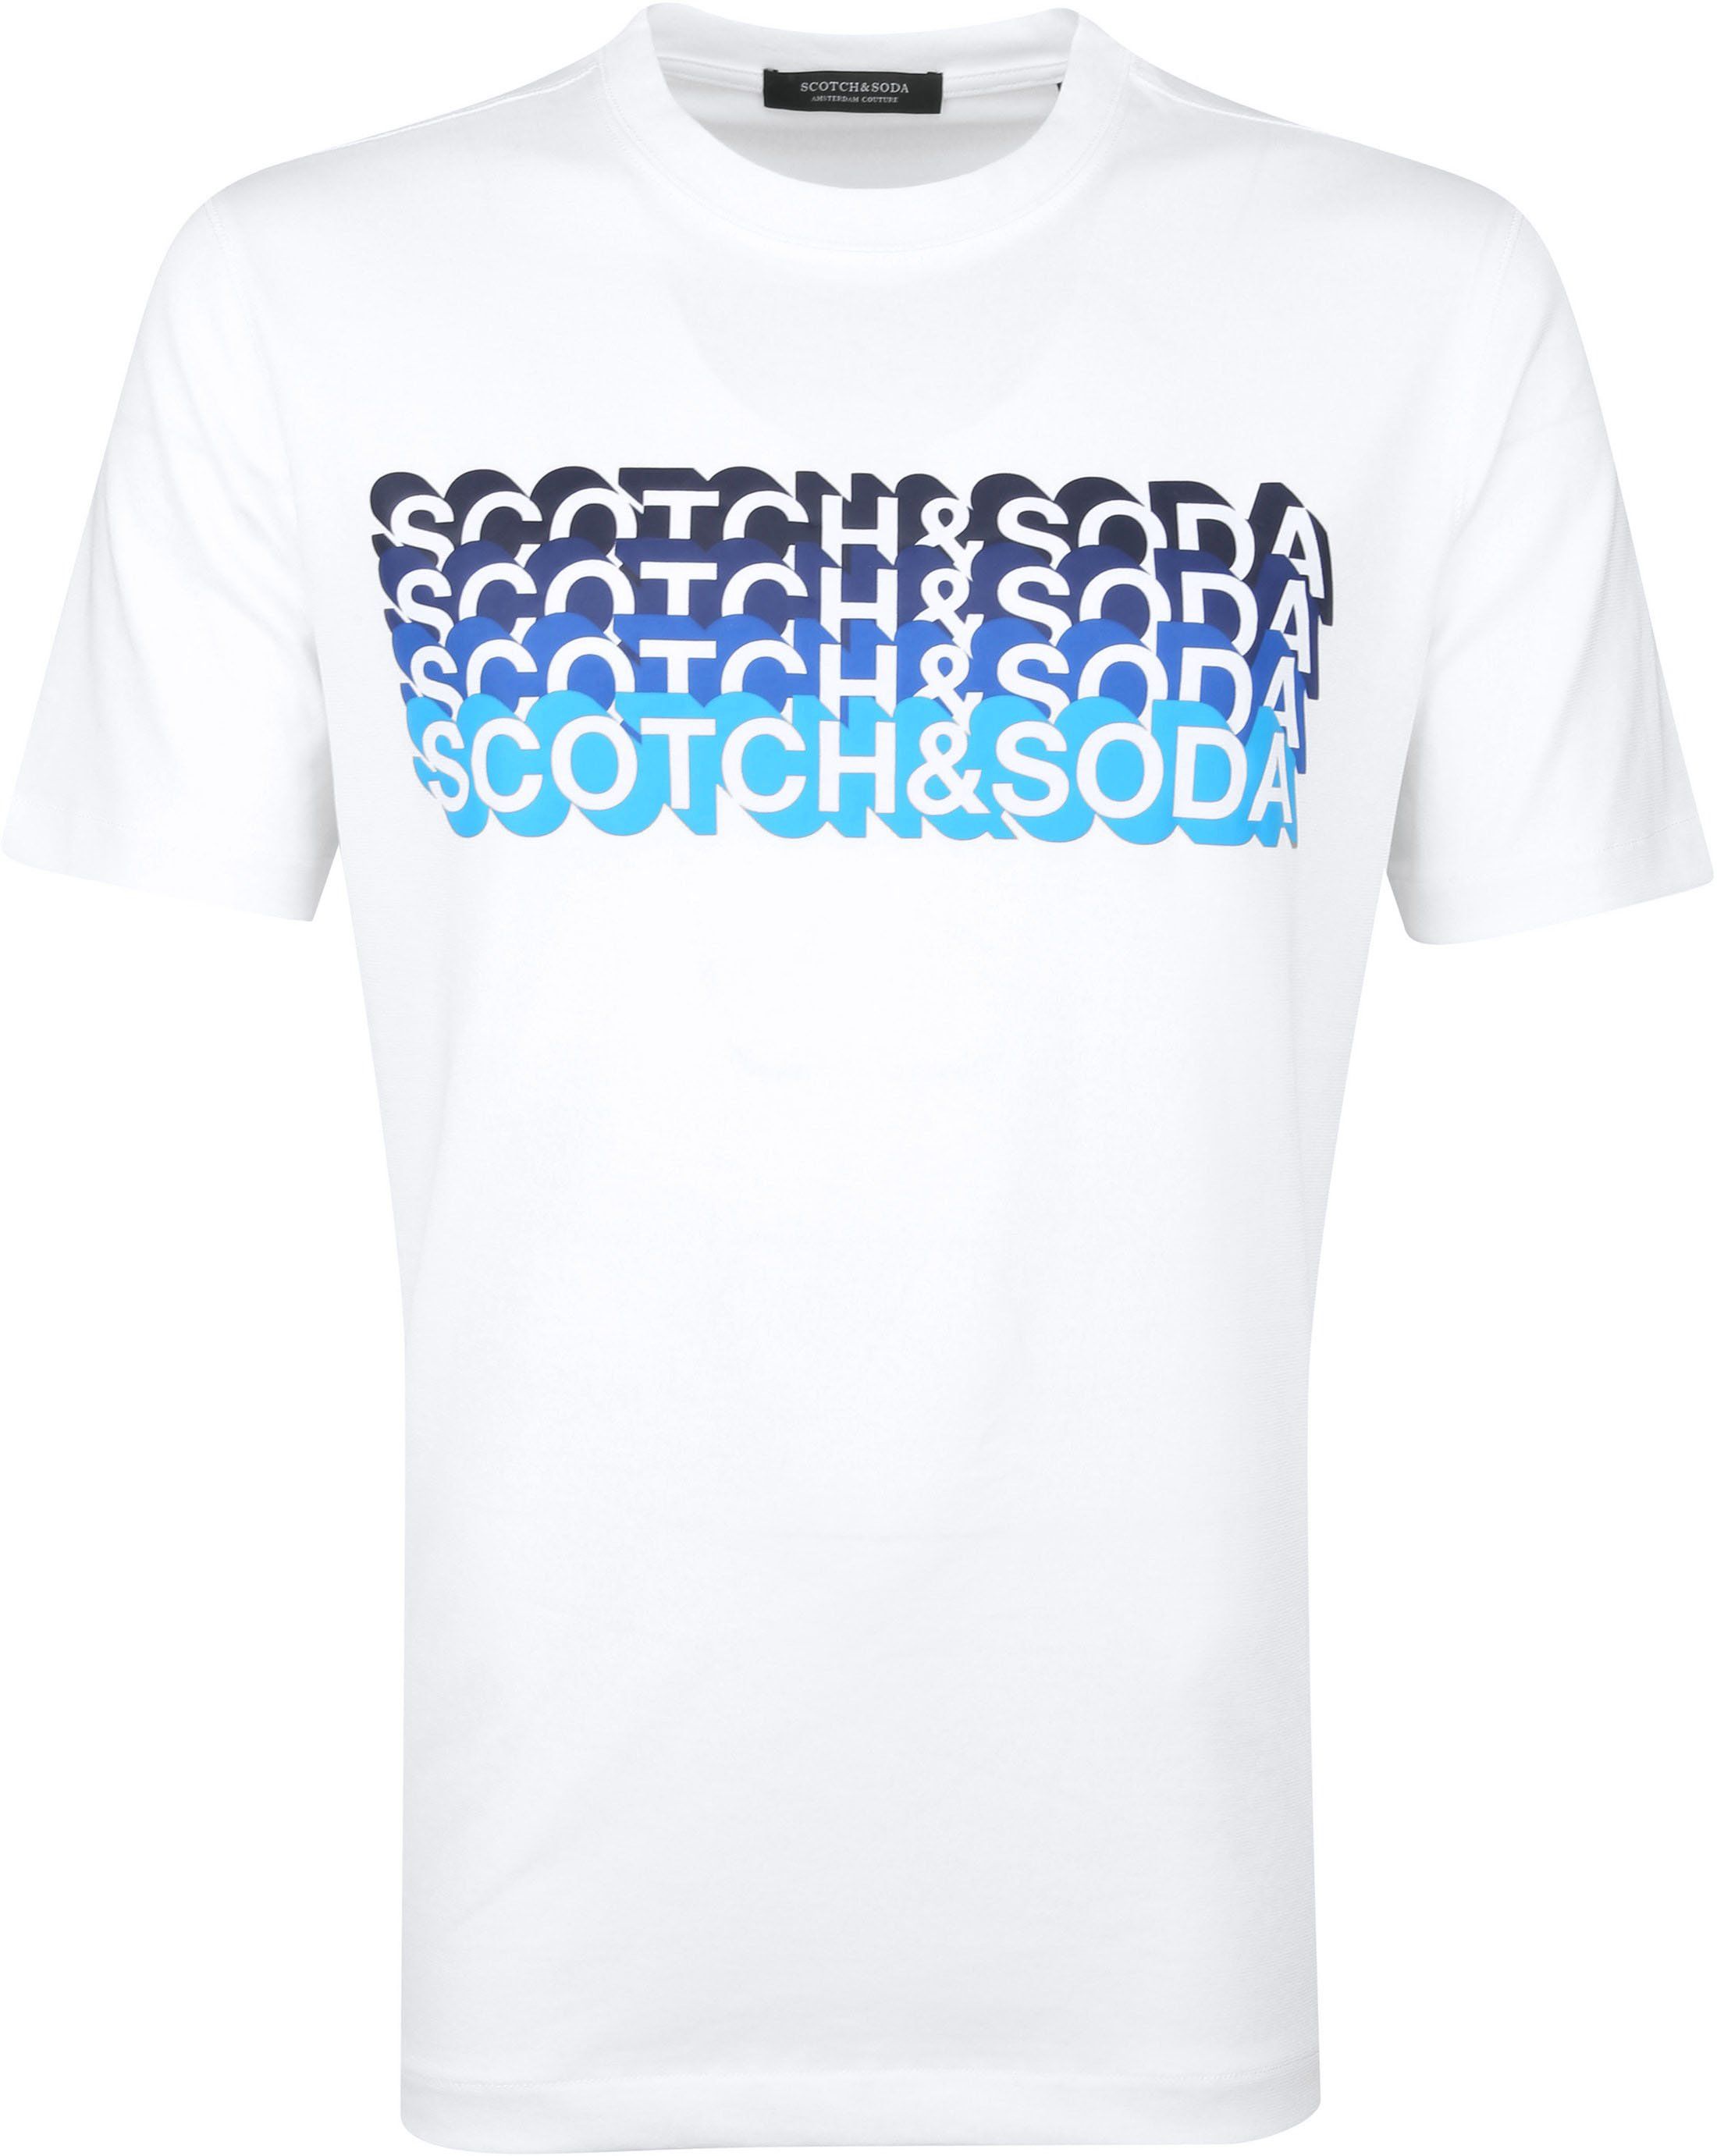 Scotch & Soda T-Shirt Logo Artwork White size L